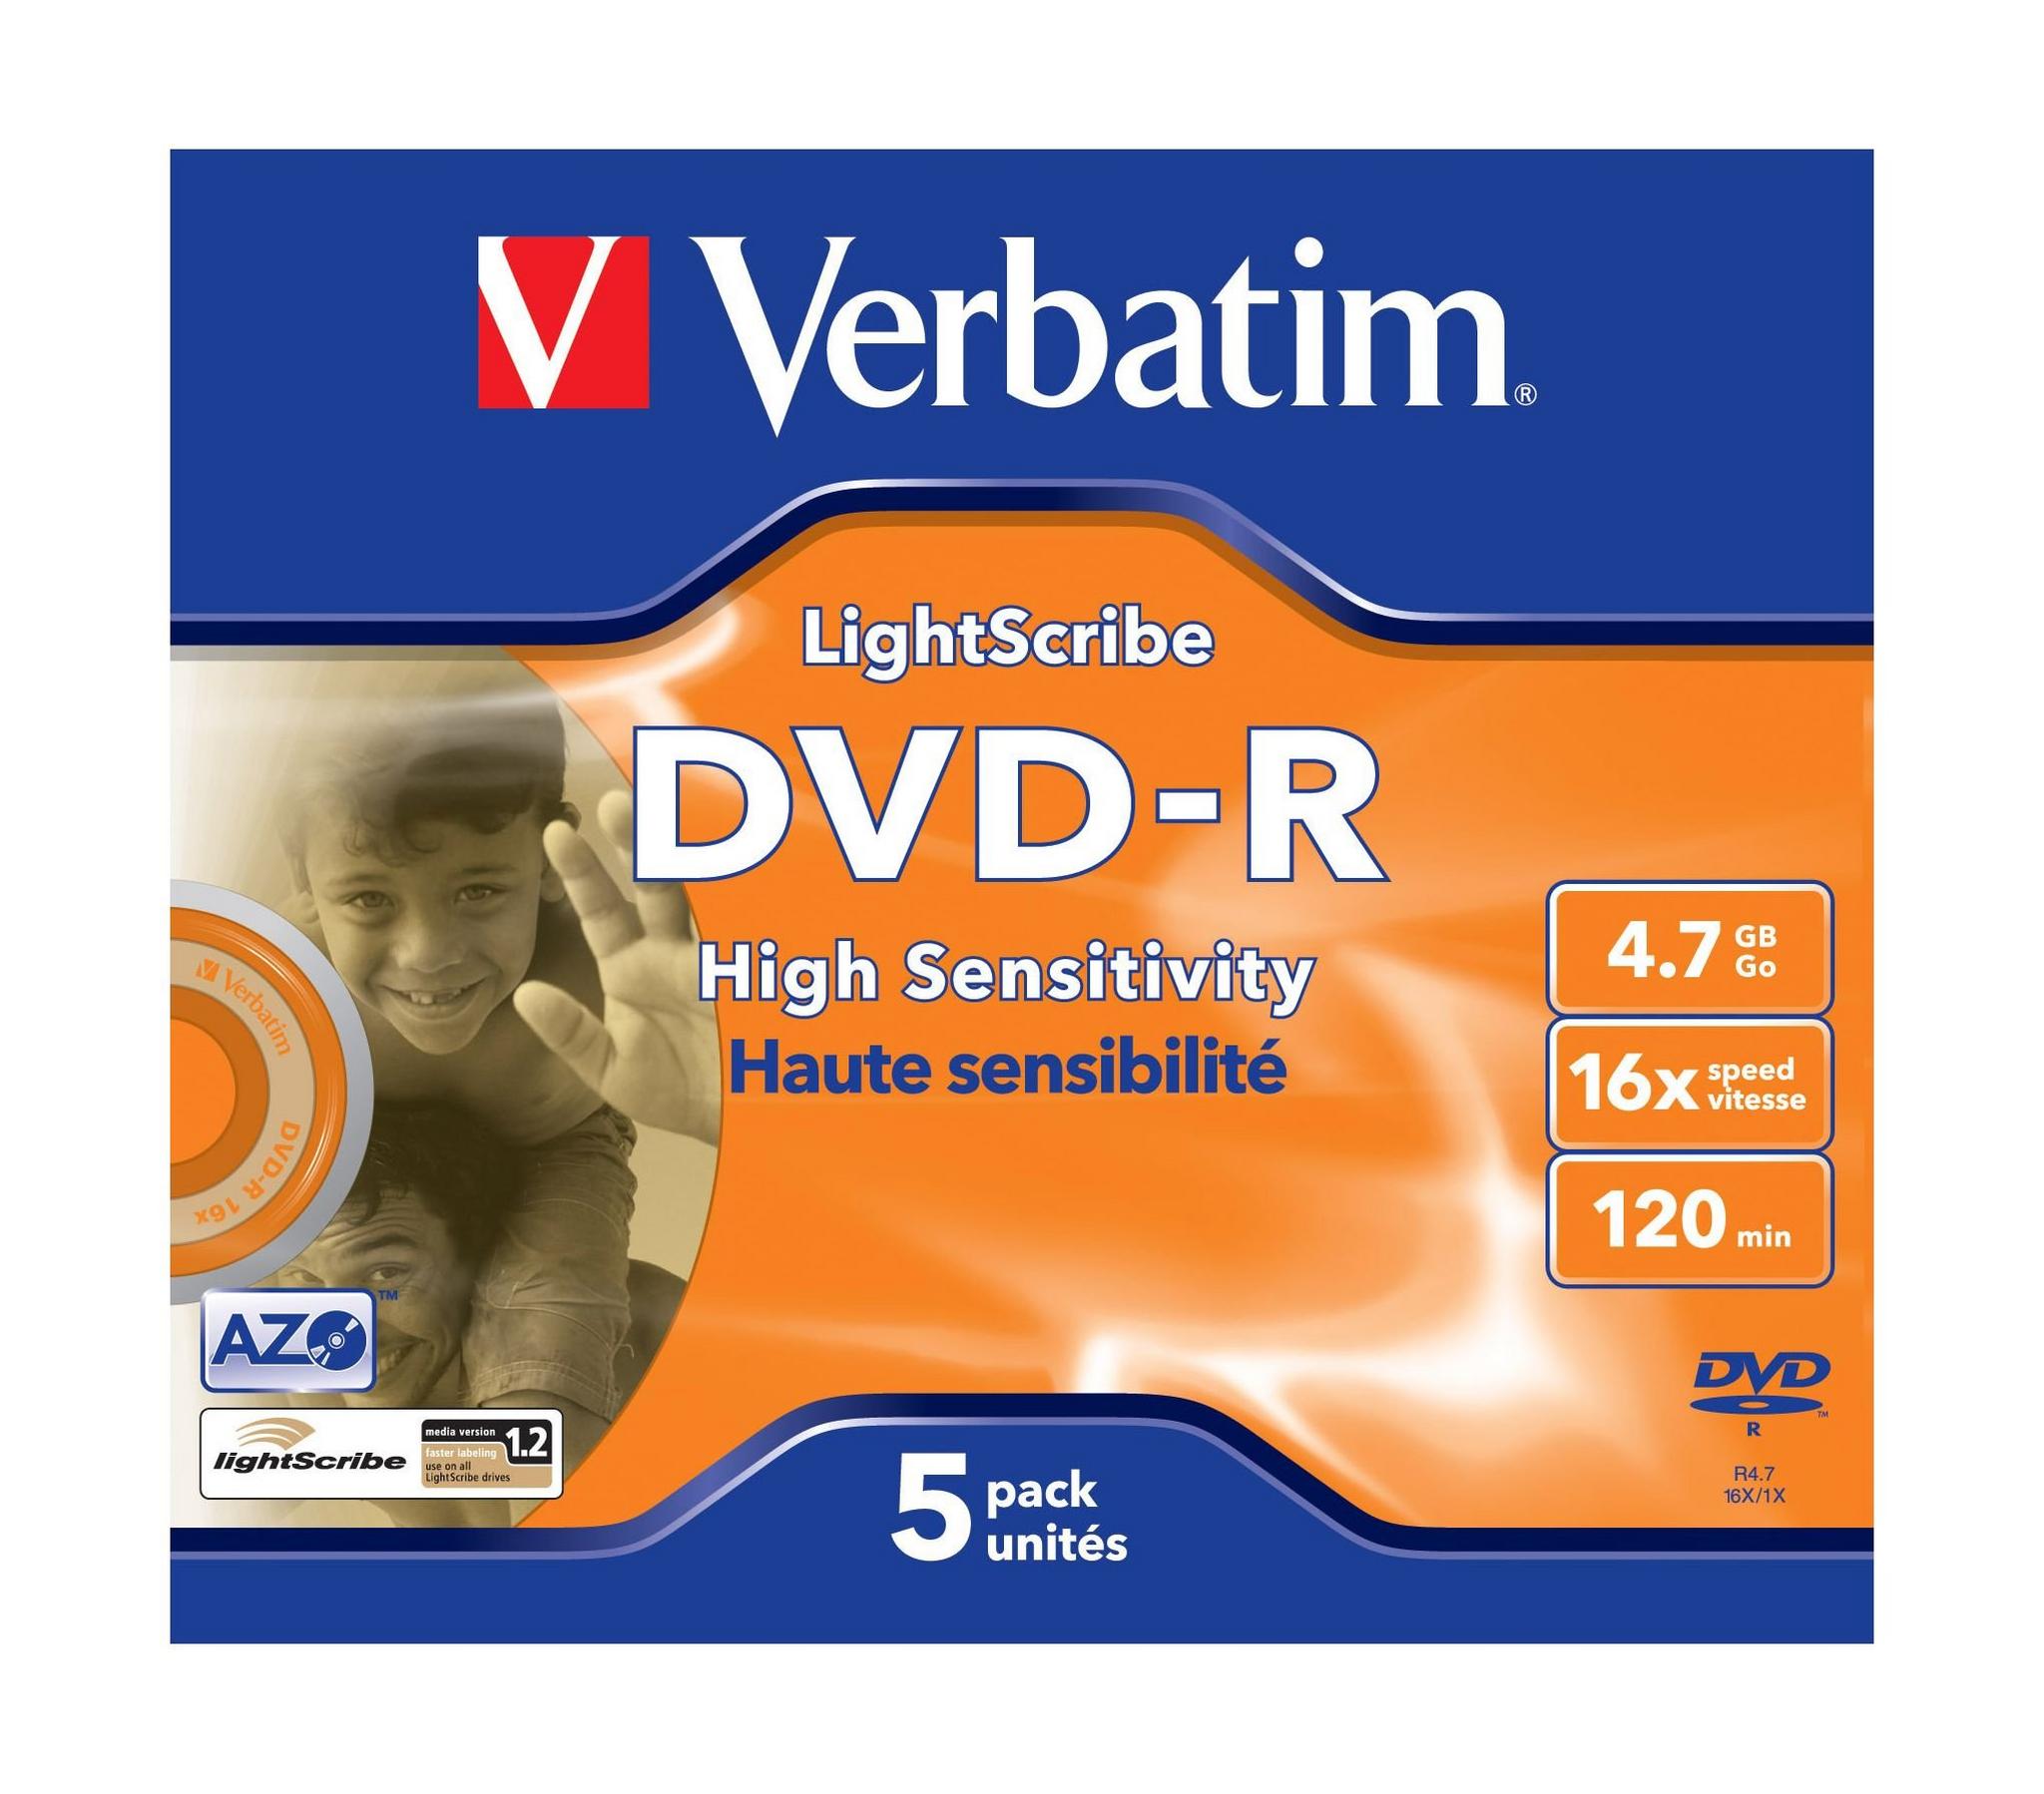 Verbatim DVD+R 5 Pack - Lightscribe